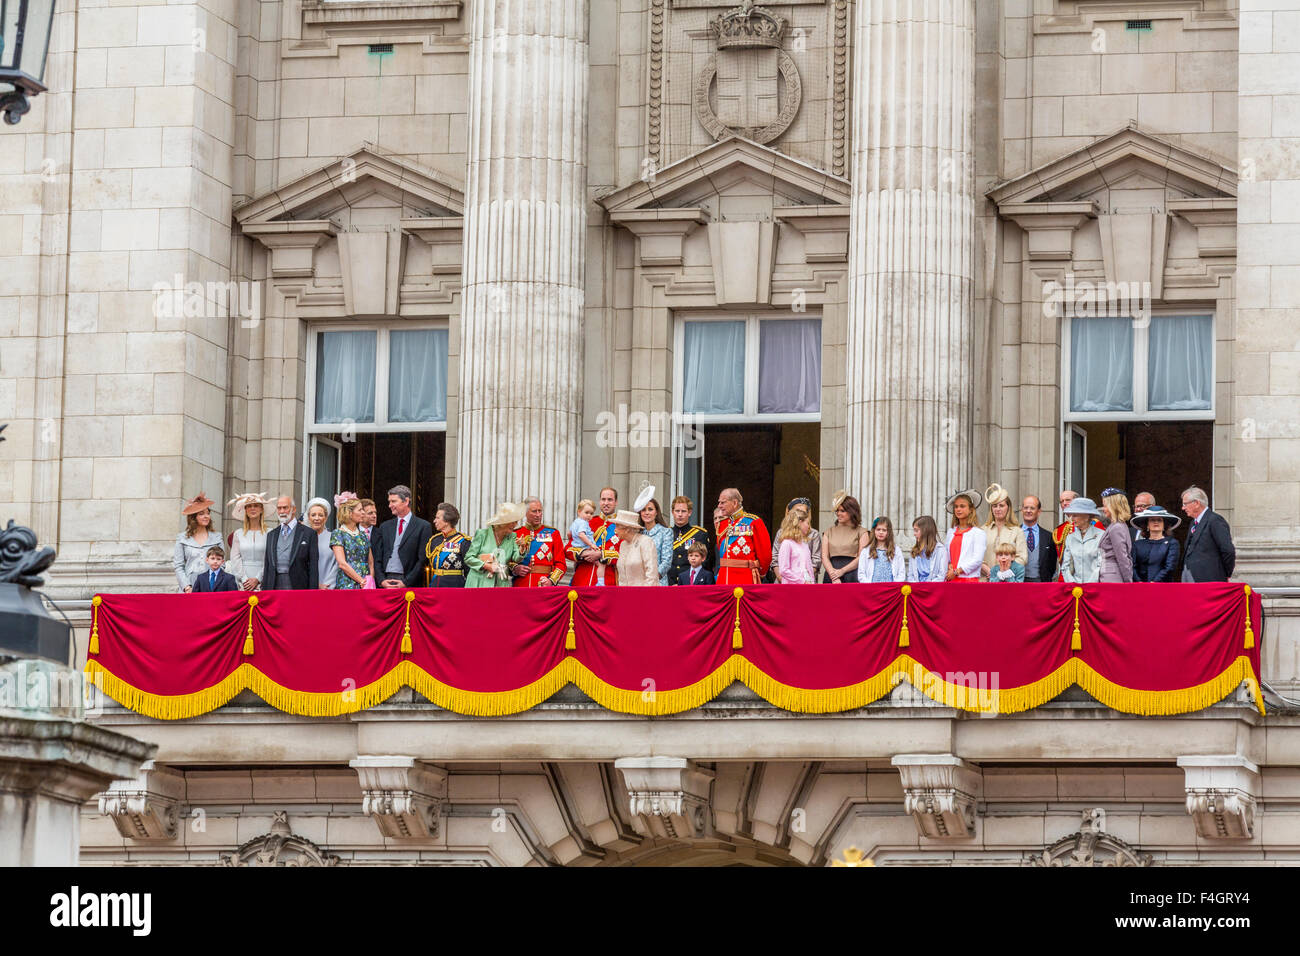 The Royal Family on the Balcony of Buckingham Palace London England UK 2005 Stock Photo